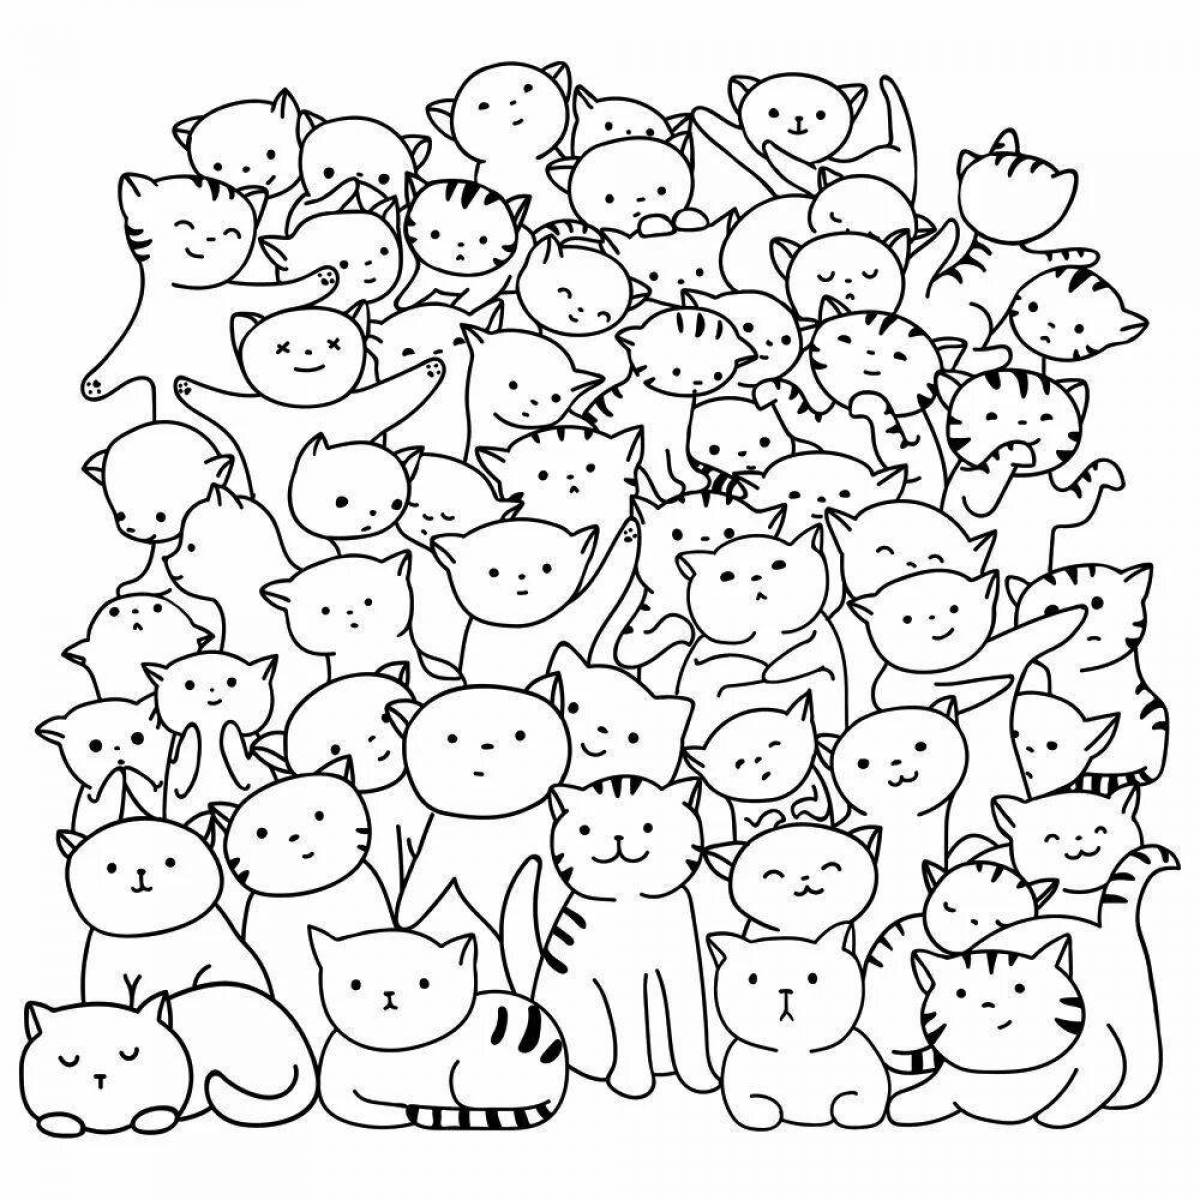 Many cats #7